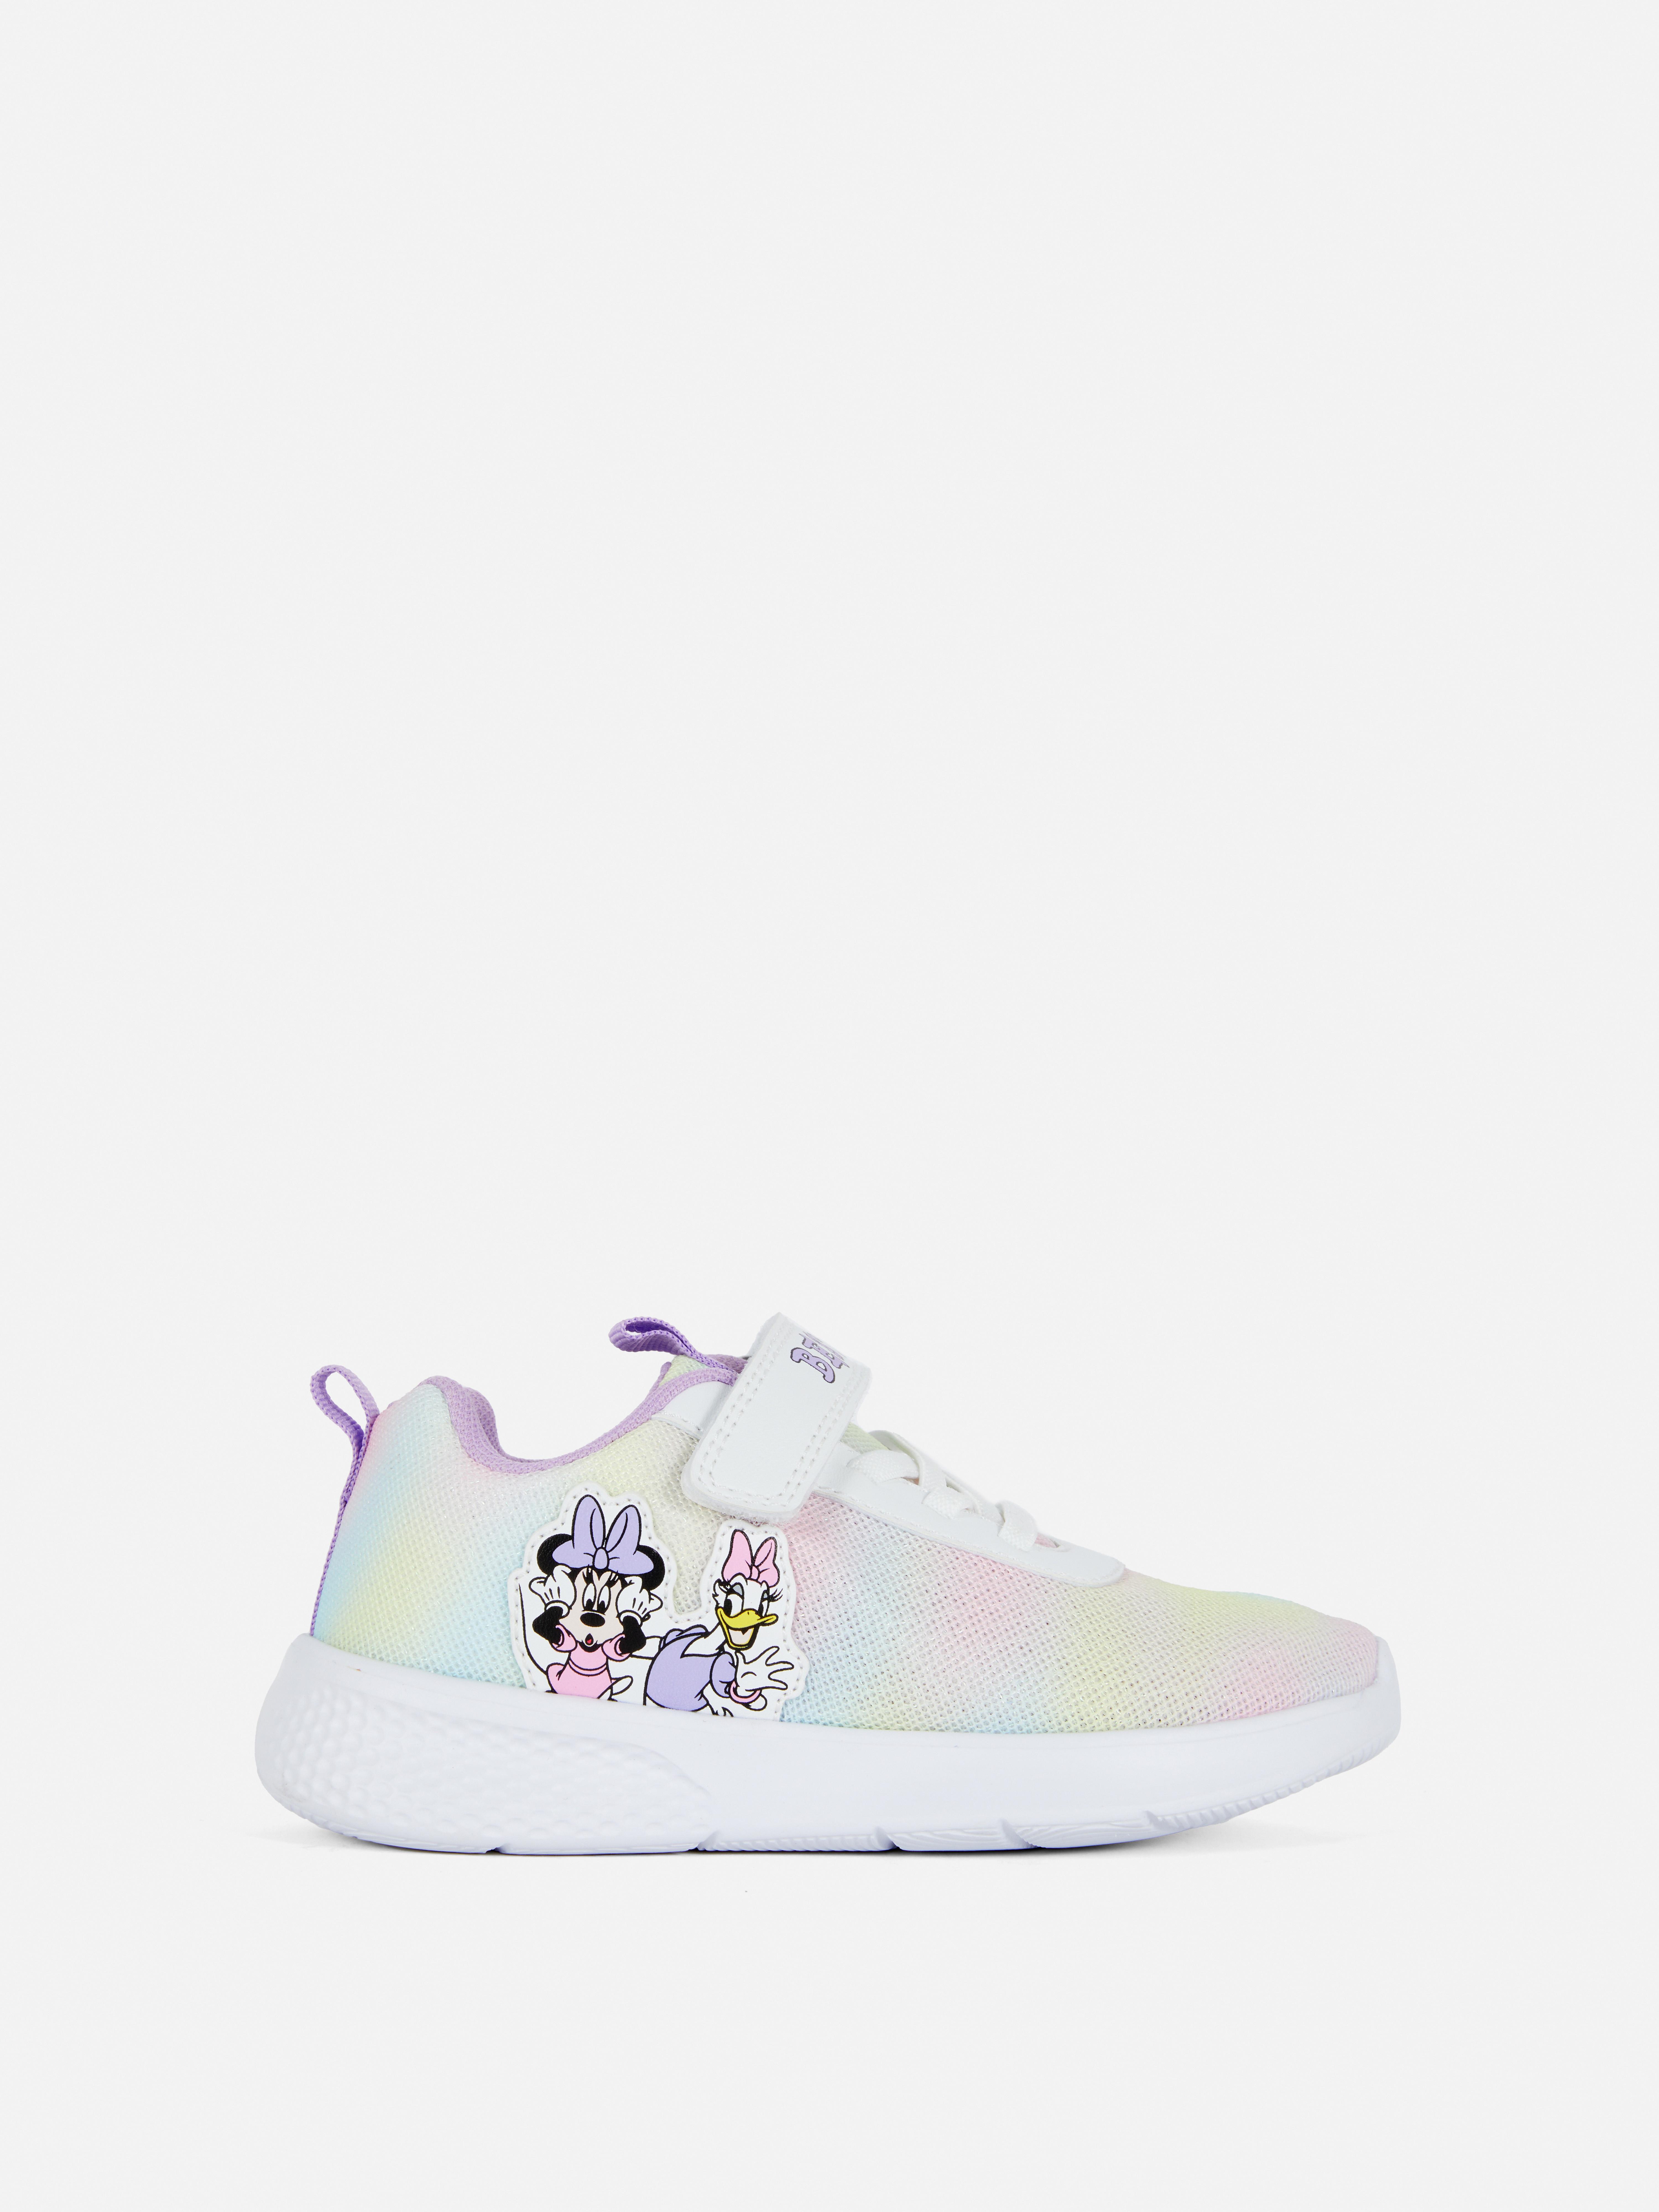 „Disney Minnie Maus und Daisy Duck“ Batik-Sneakers